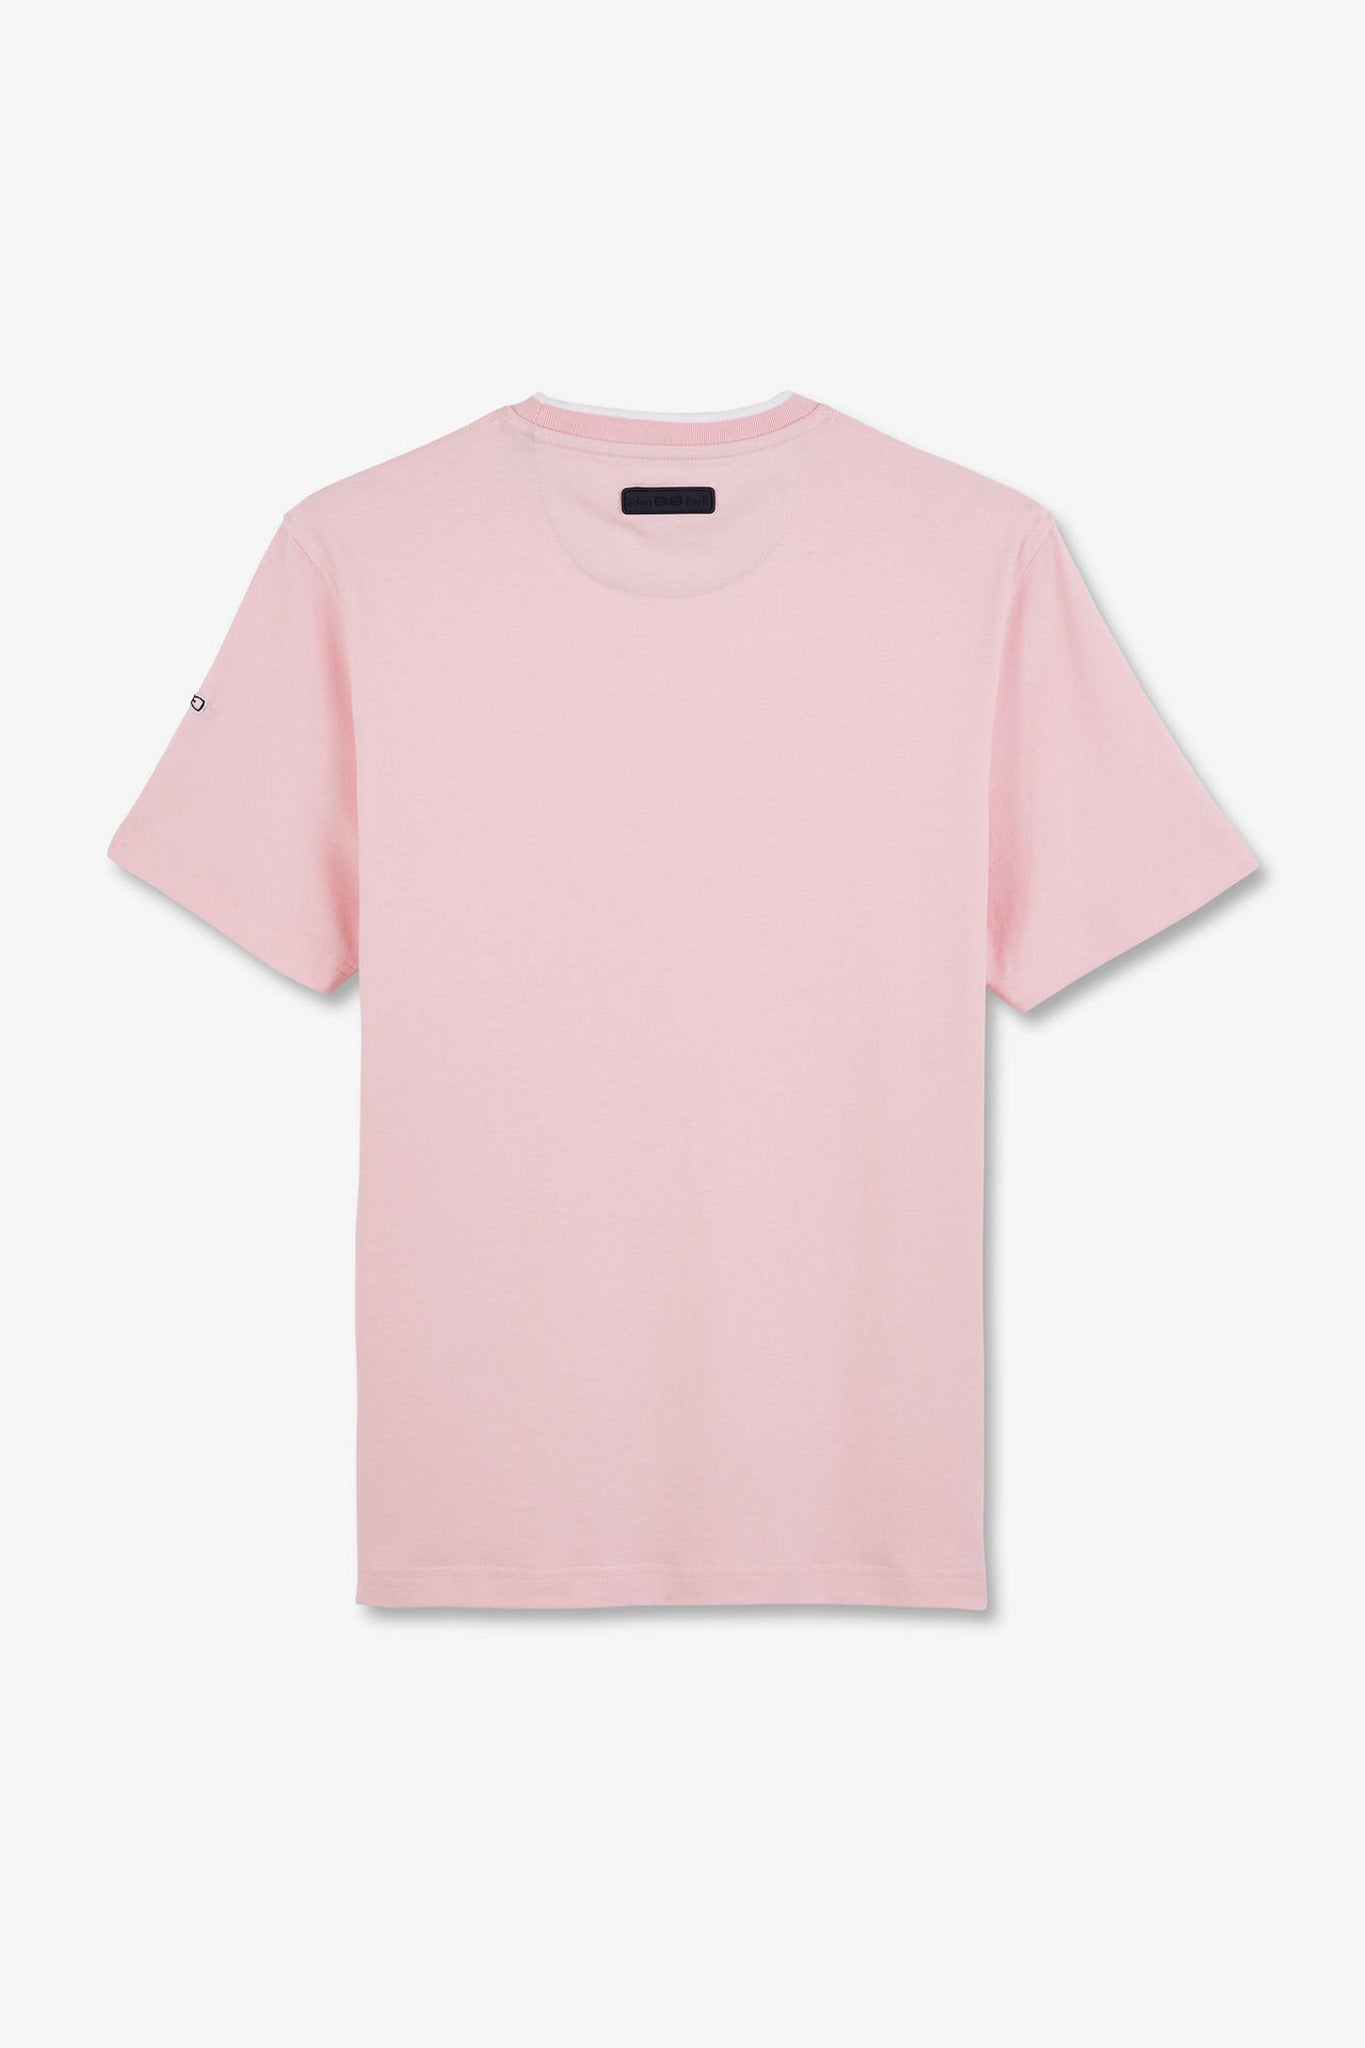 T-shirt rose uni à manches courtes